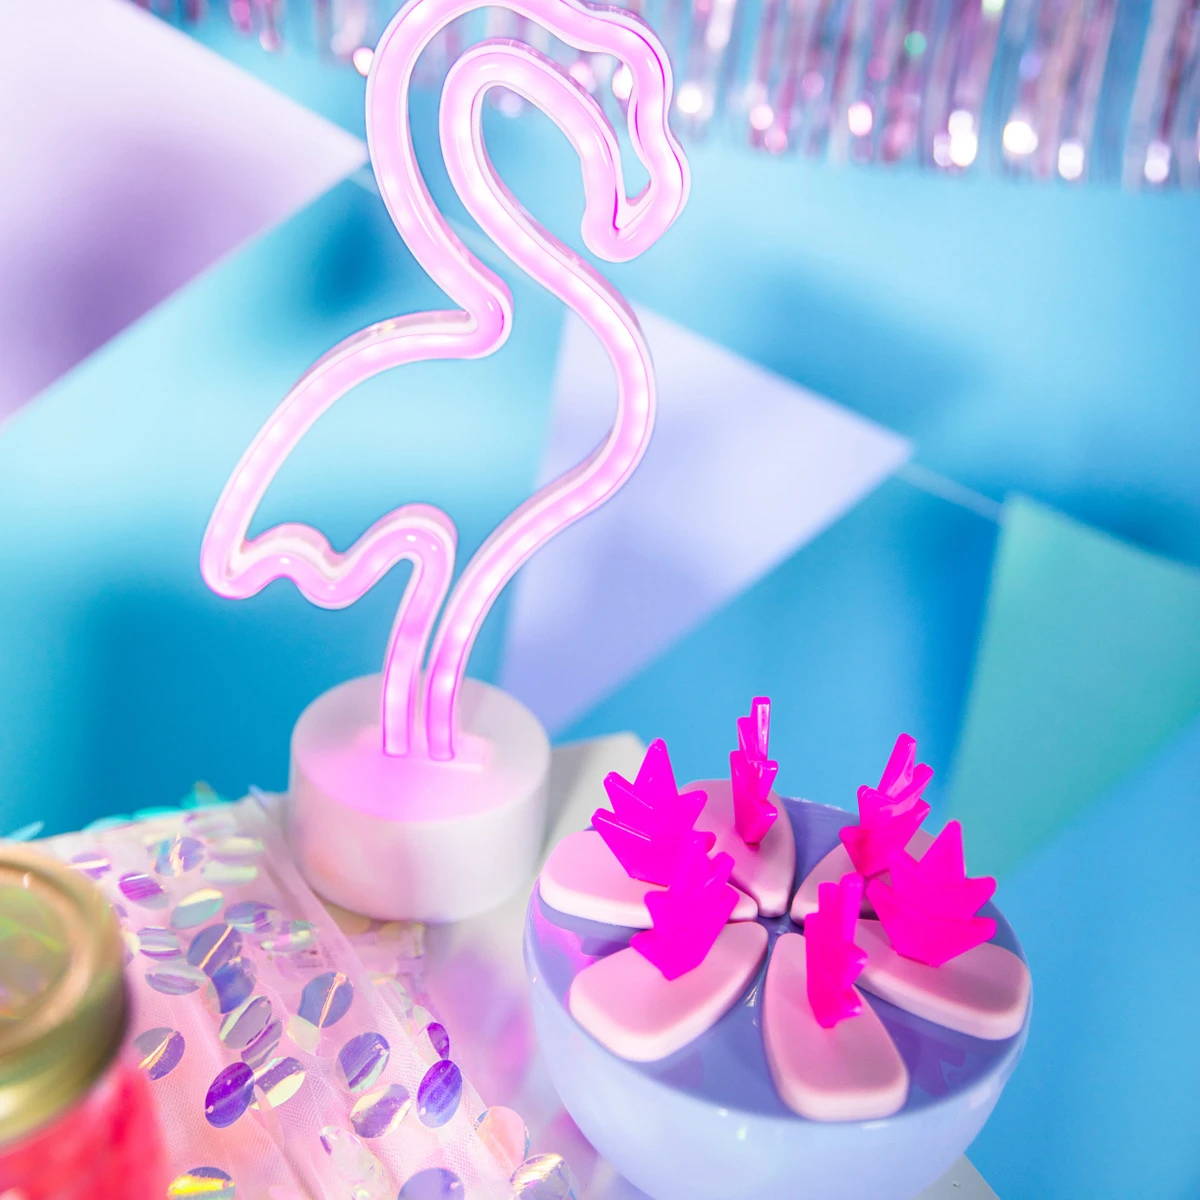 Flamingo-Neonlicht neben einer Schale mit flamingoförmigen Getränkestäbchen, die die Umgebung in einem leuchtenden Pink erstrahlen lassen.